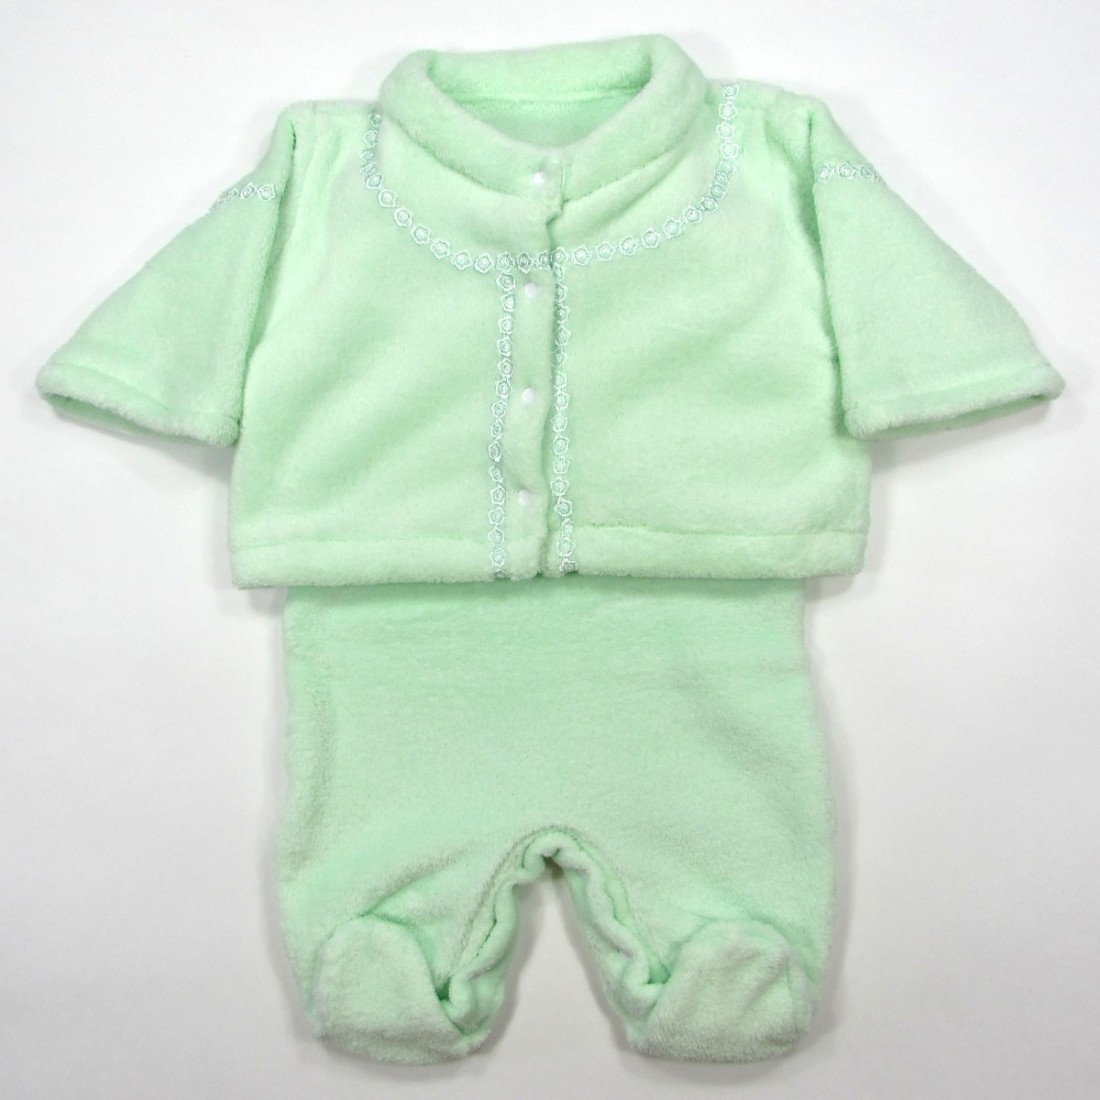 Ensemble paletot et combinaison vert pâle en peluche bébé fille ou garçon